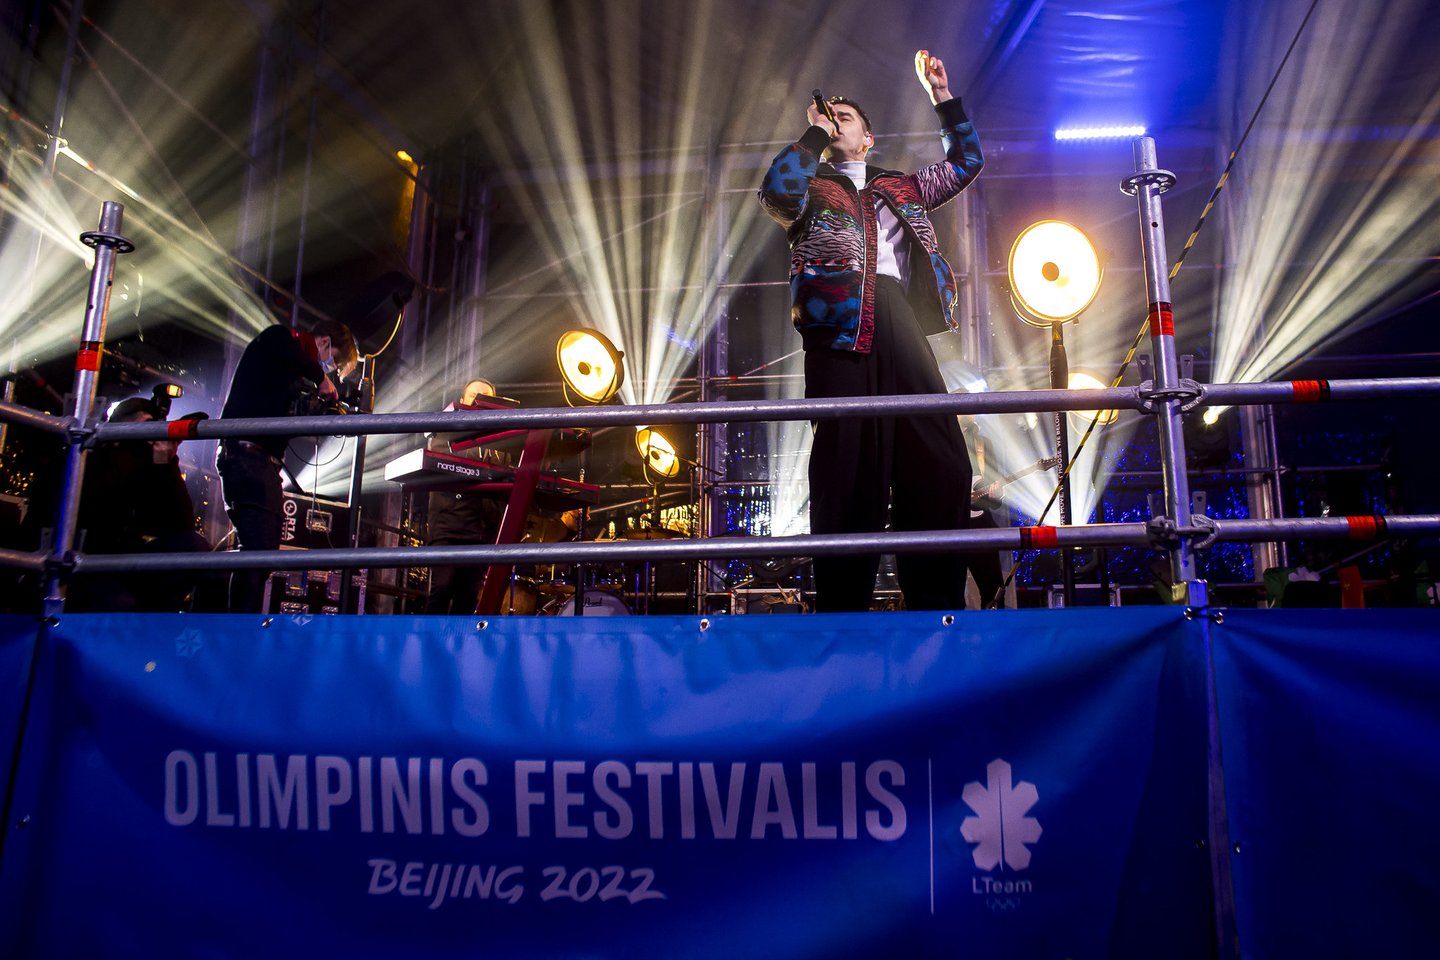  Olimpinis festivalis „Beijing 2022“ atidarytas.<br> R.Lukoševičiaus nuotr.